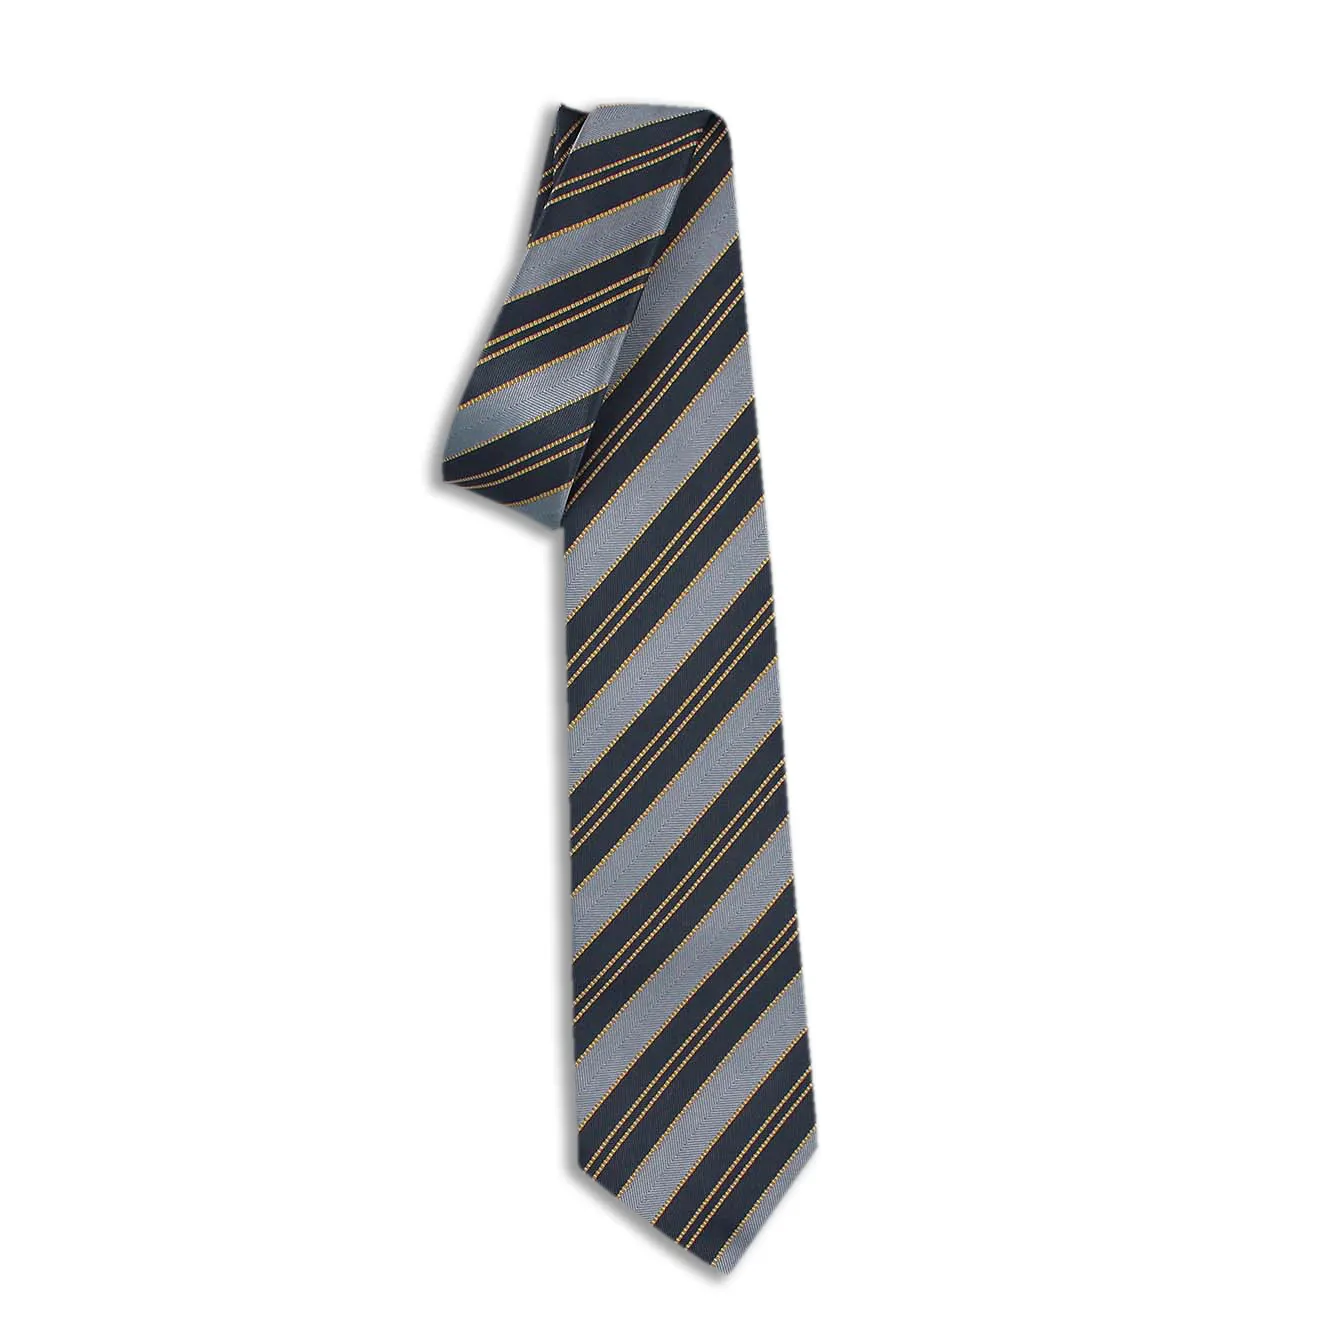 Esclusiva collezione di cravatte in seta 100% italiana-lucernario blu chiaro 148 cm-lusso con accessori Premium